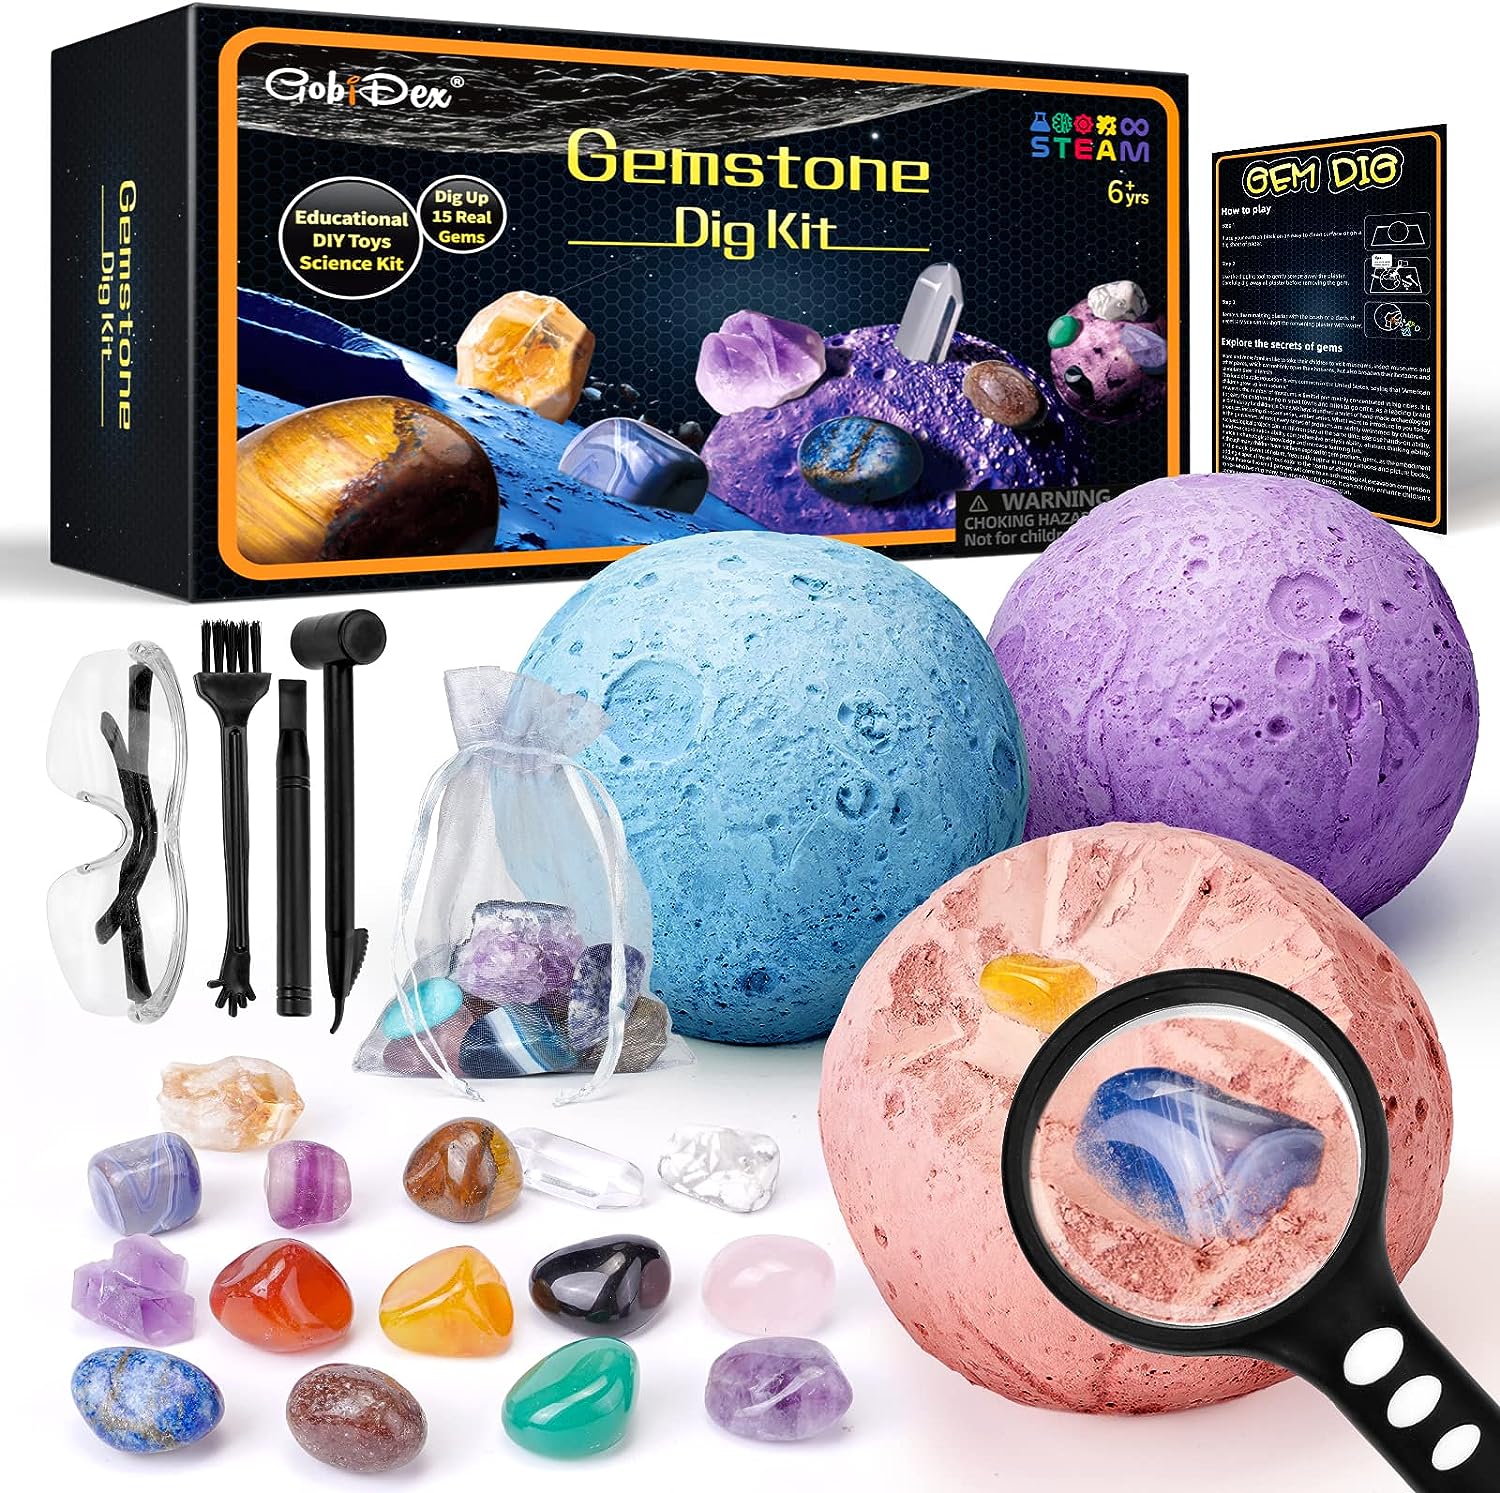 GobiDex Gemstones Dig Kit (Space)